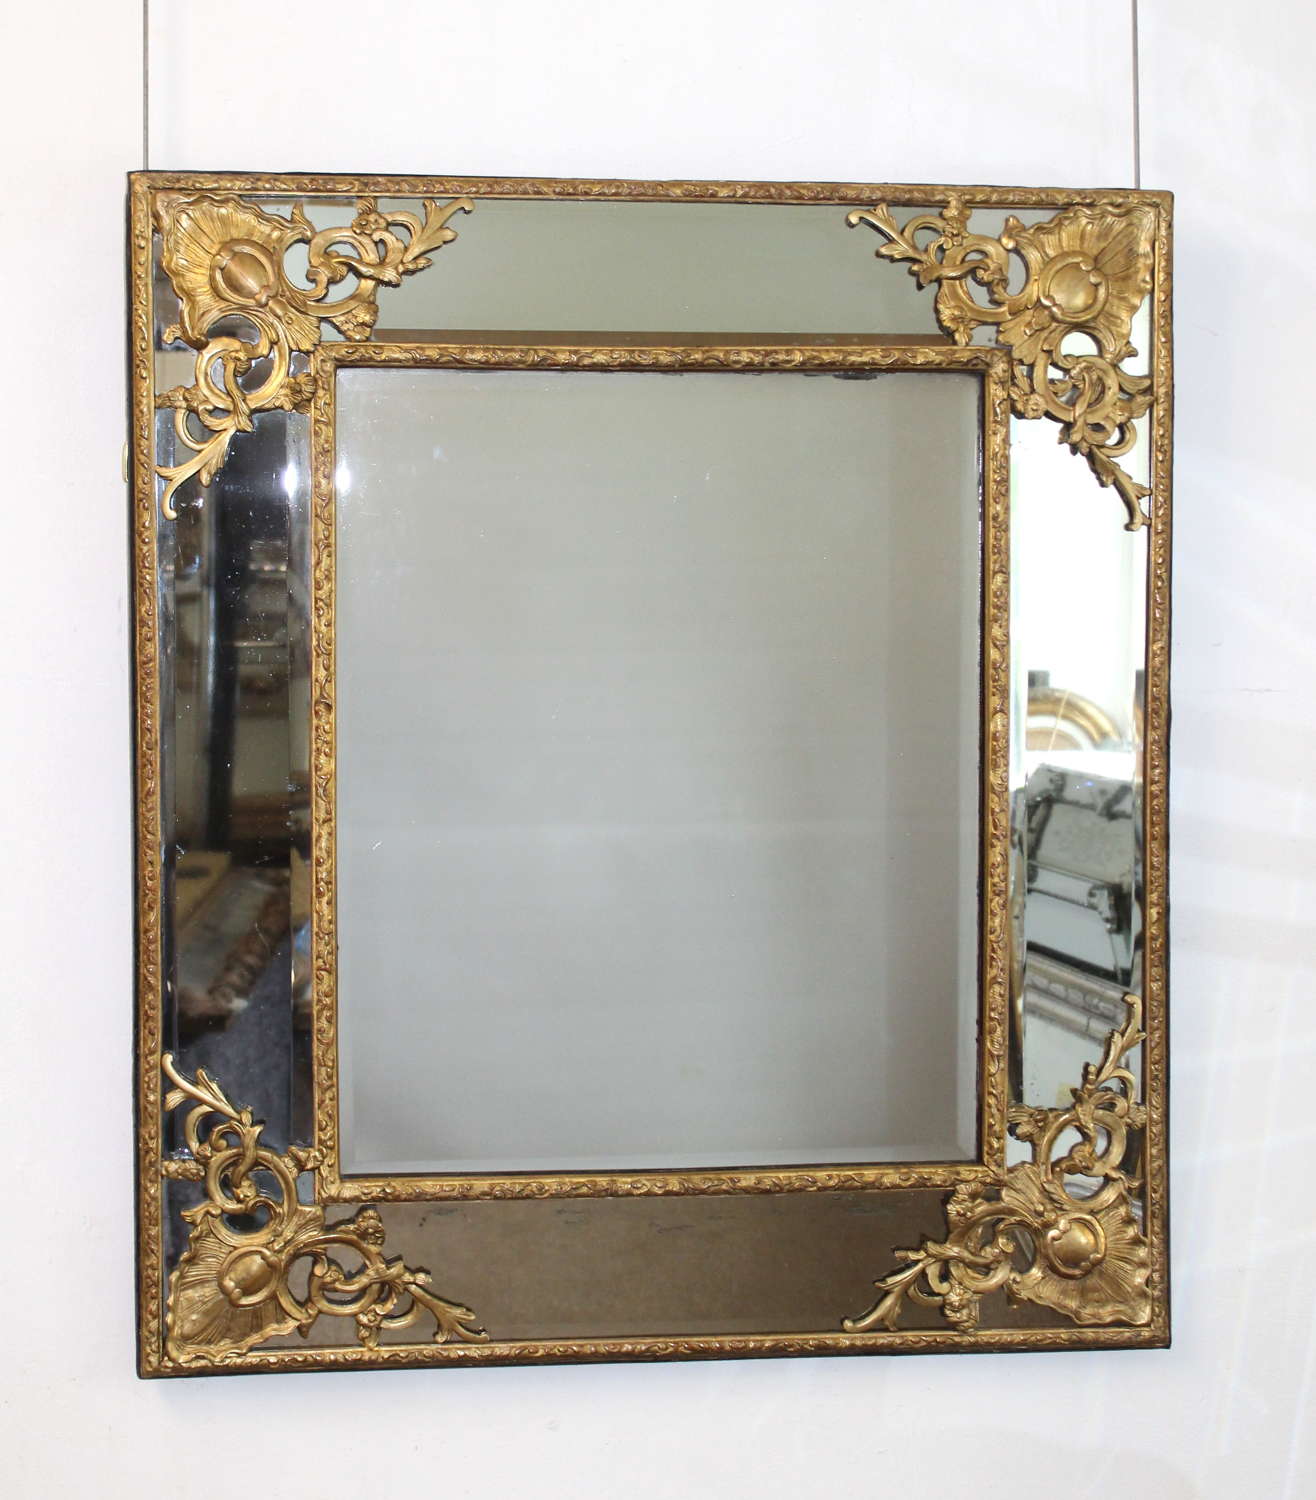 18th century French giltwood margin mirror